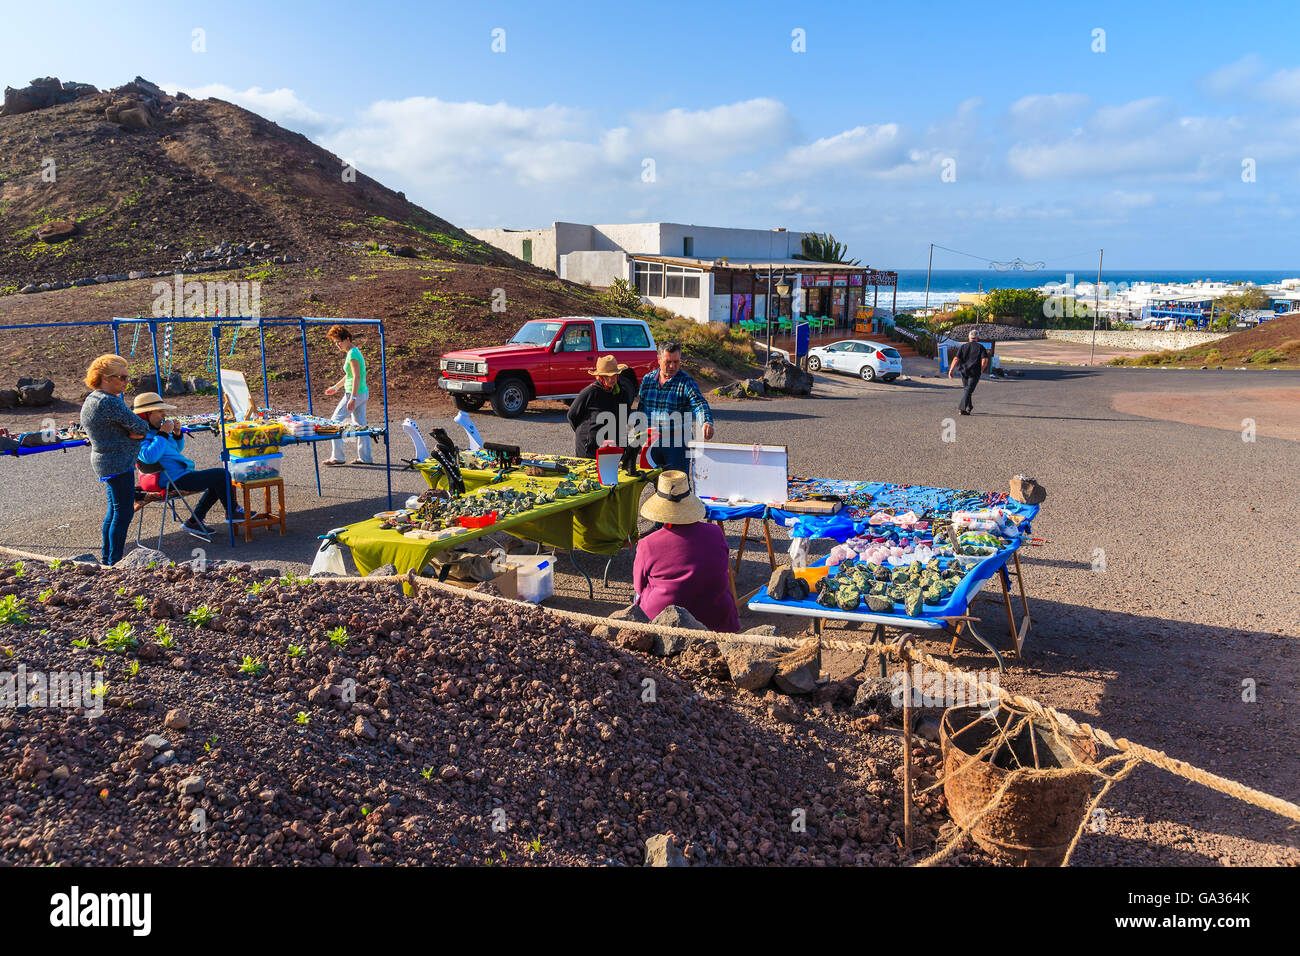 EL GOLFO, Lanzarote Island - Jan 15, 2015: turisti di acquisto di souvenir in El Golfo village, Lanzarote, Isole Canarie, Spagna. Questo è luogo molto popolare per visitare spendendo vacanza sull'isola. Foto Stock